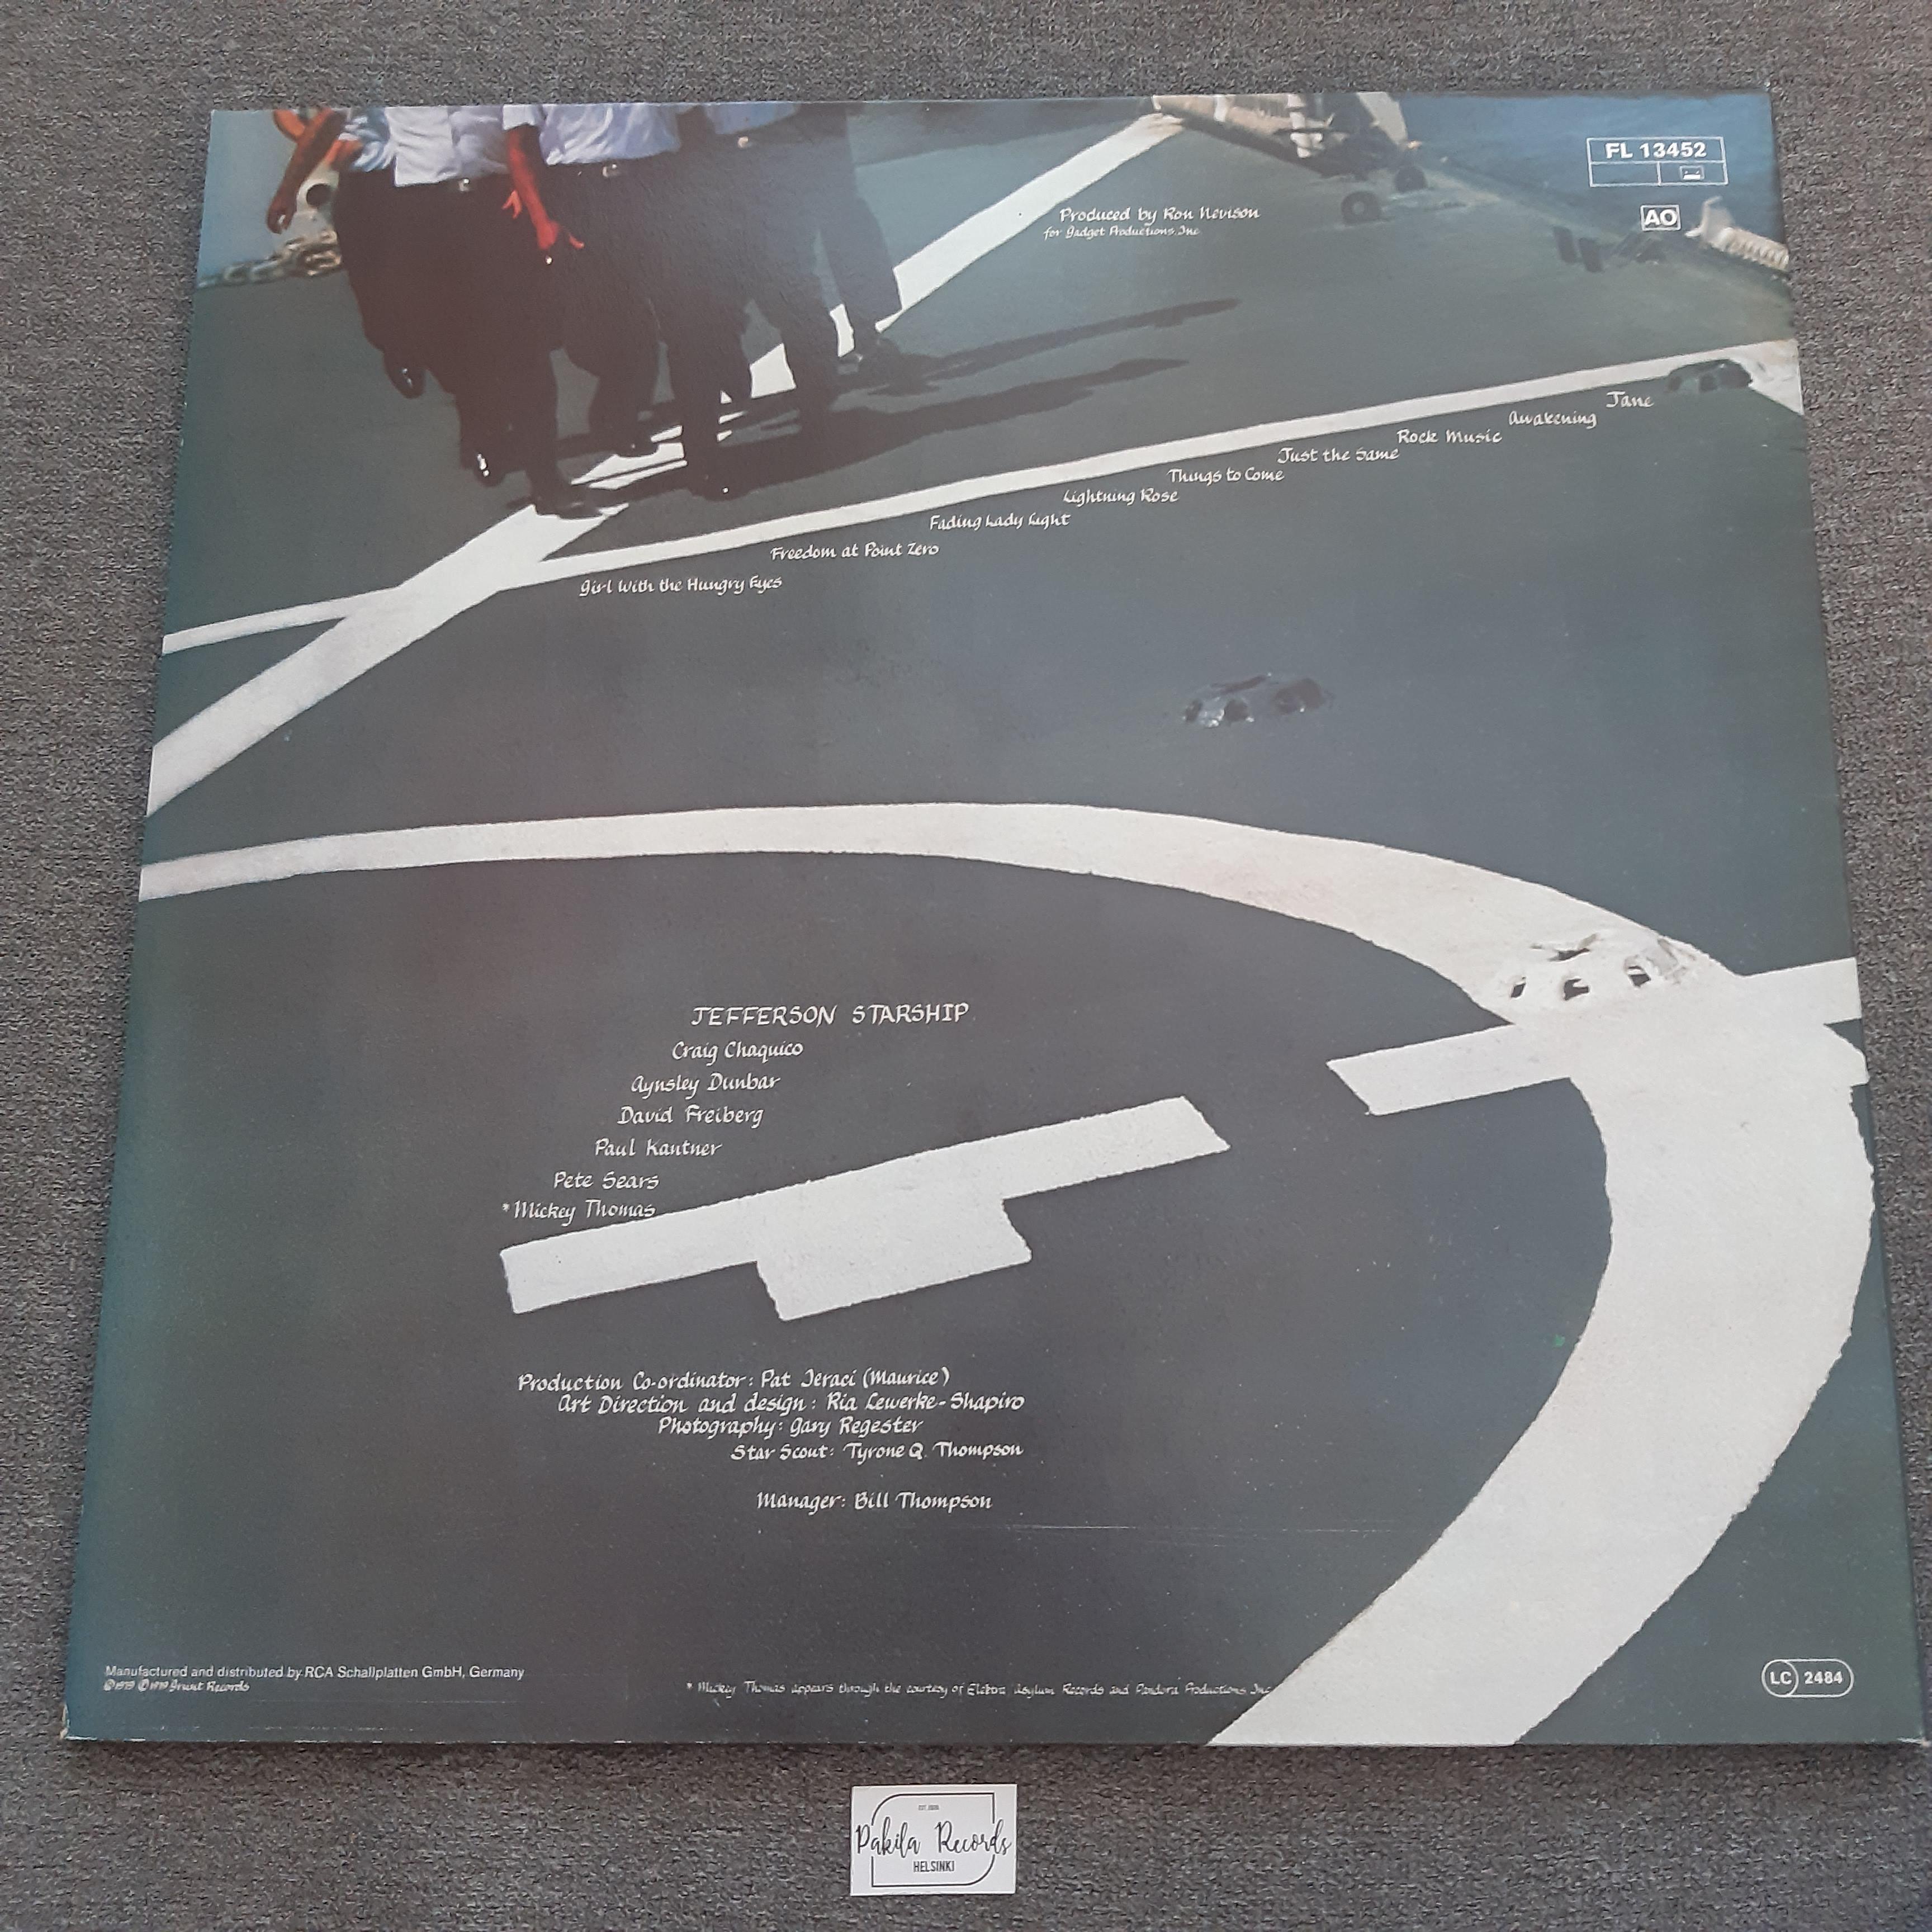 Jefferson Starship - Freedom At Point Zero - LP (käytetty)